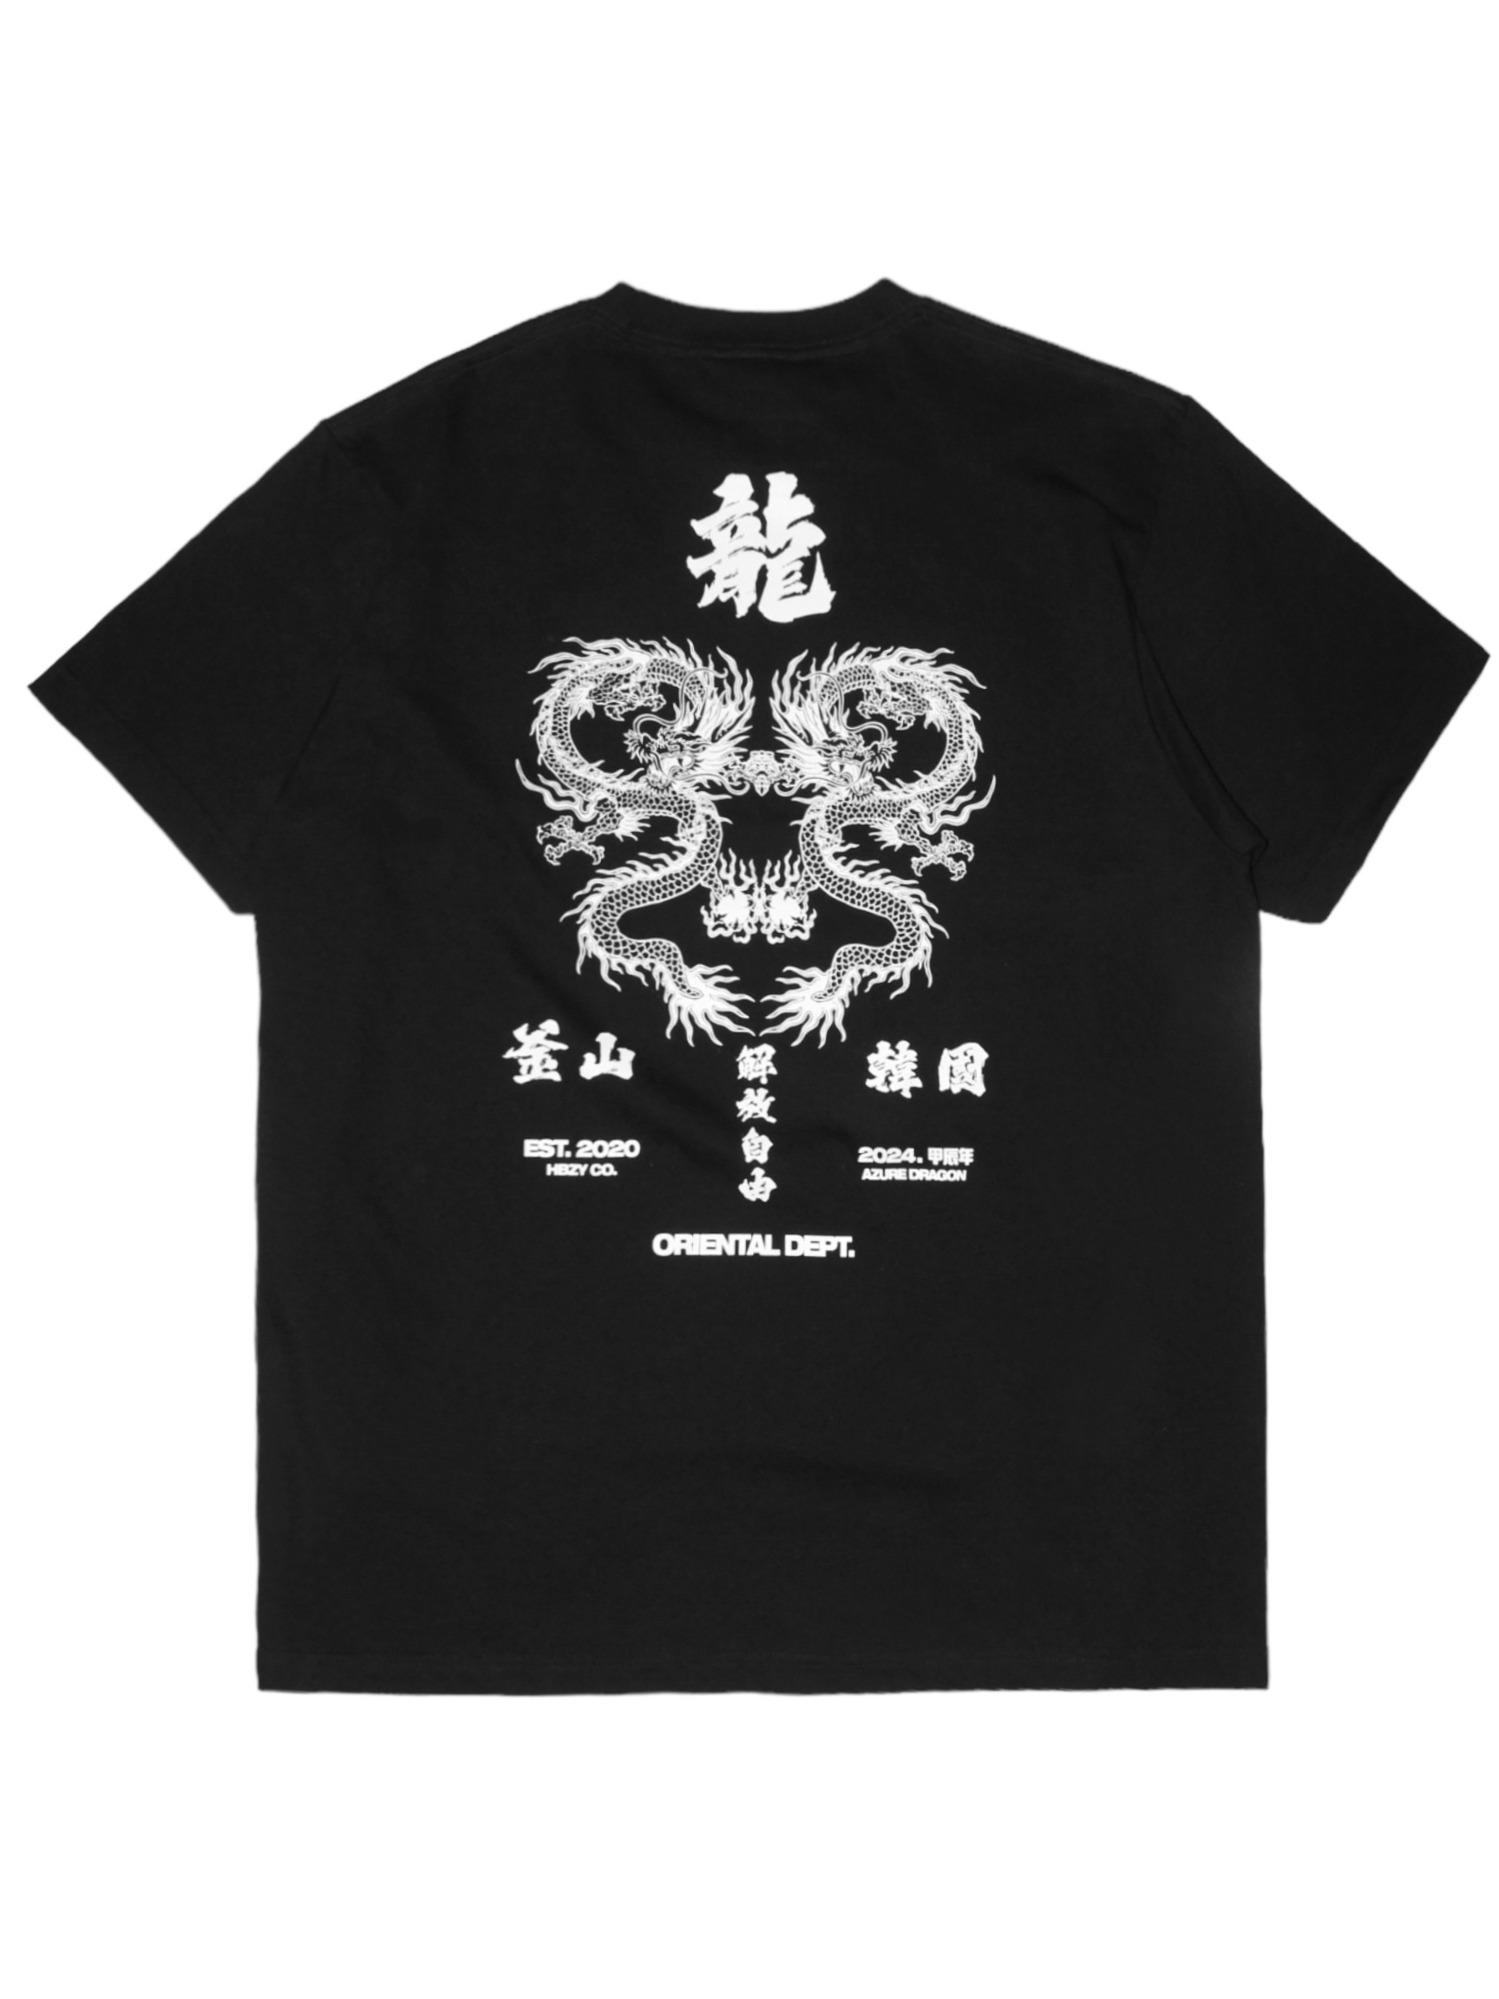 解放自由 釜山 청룡「靑龍」 Azure Dragon 1/2 T-Shirts Black/White